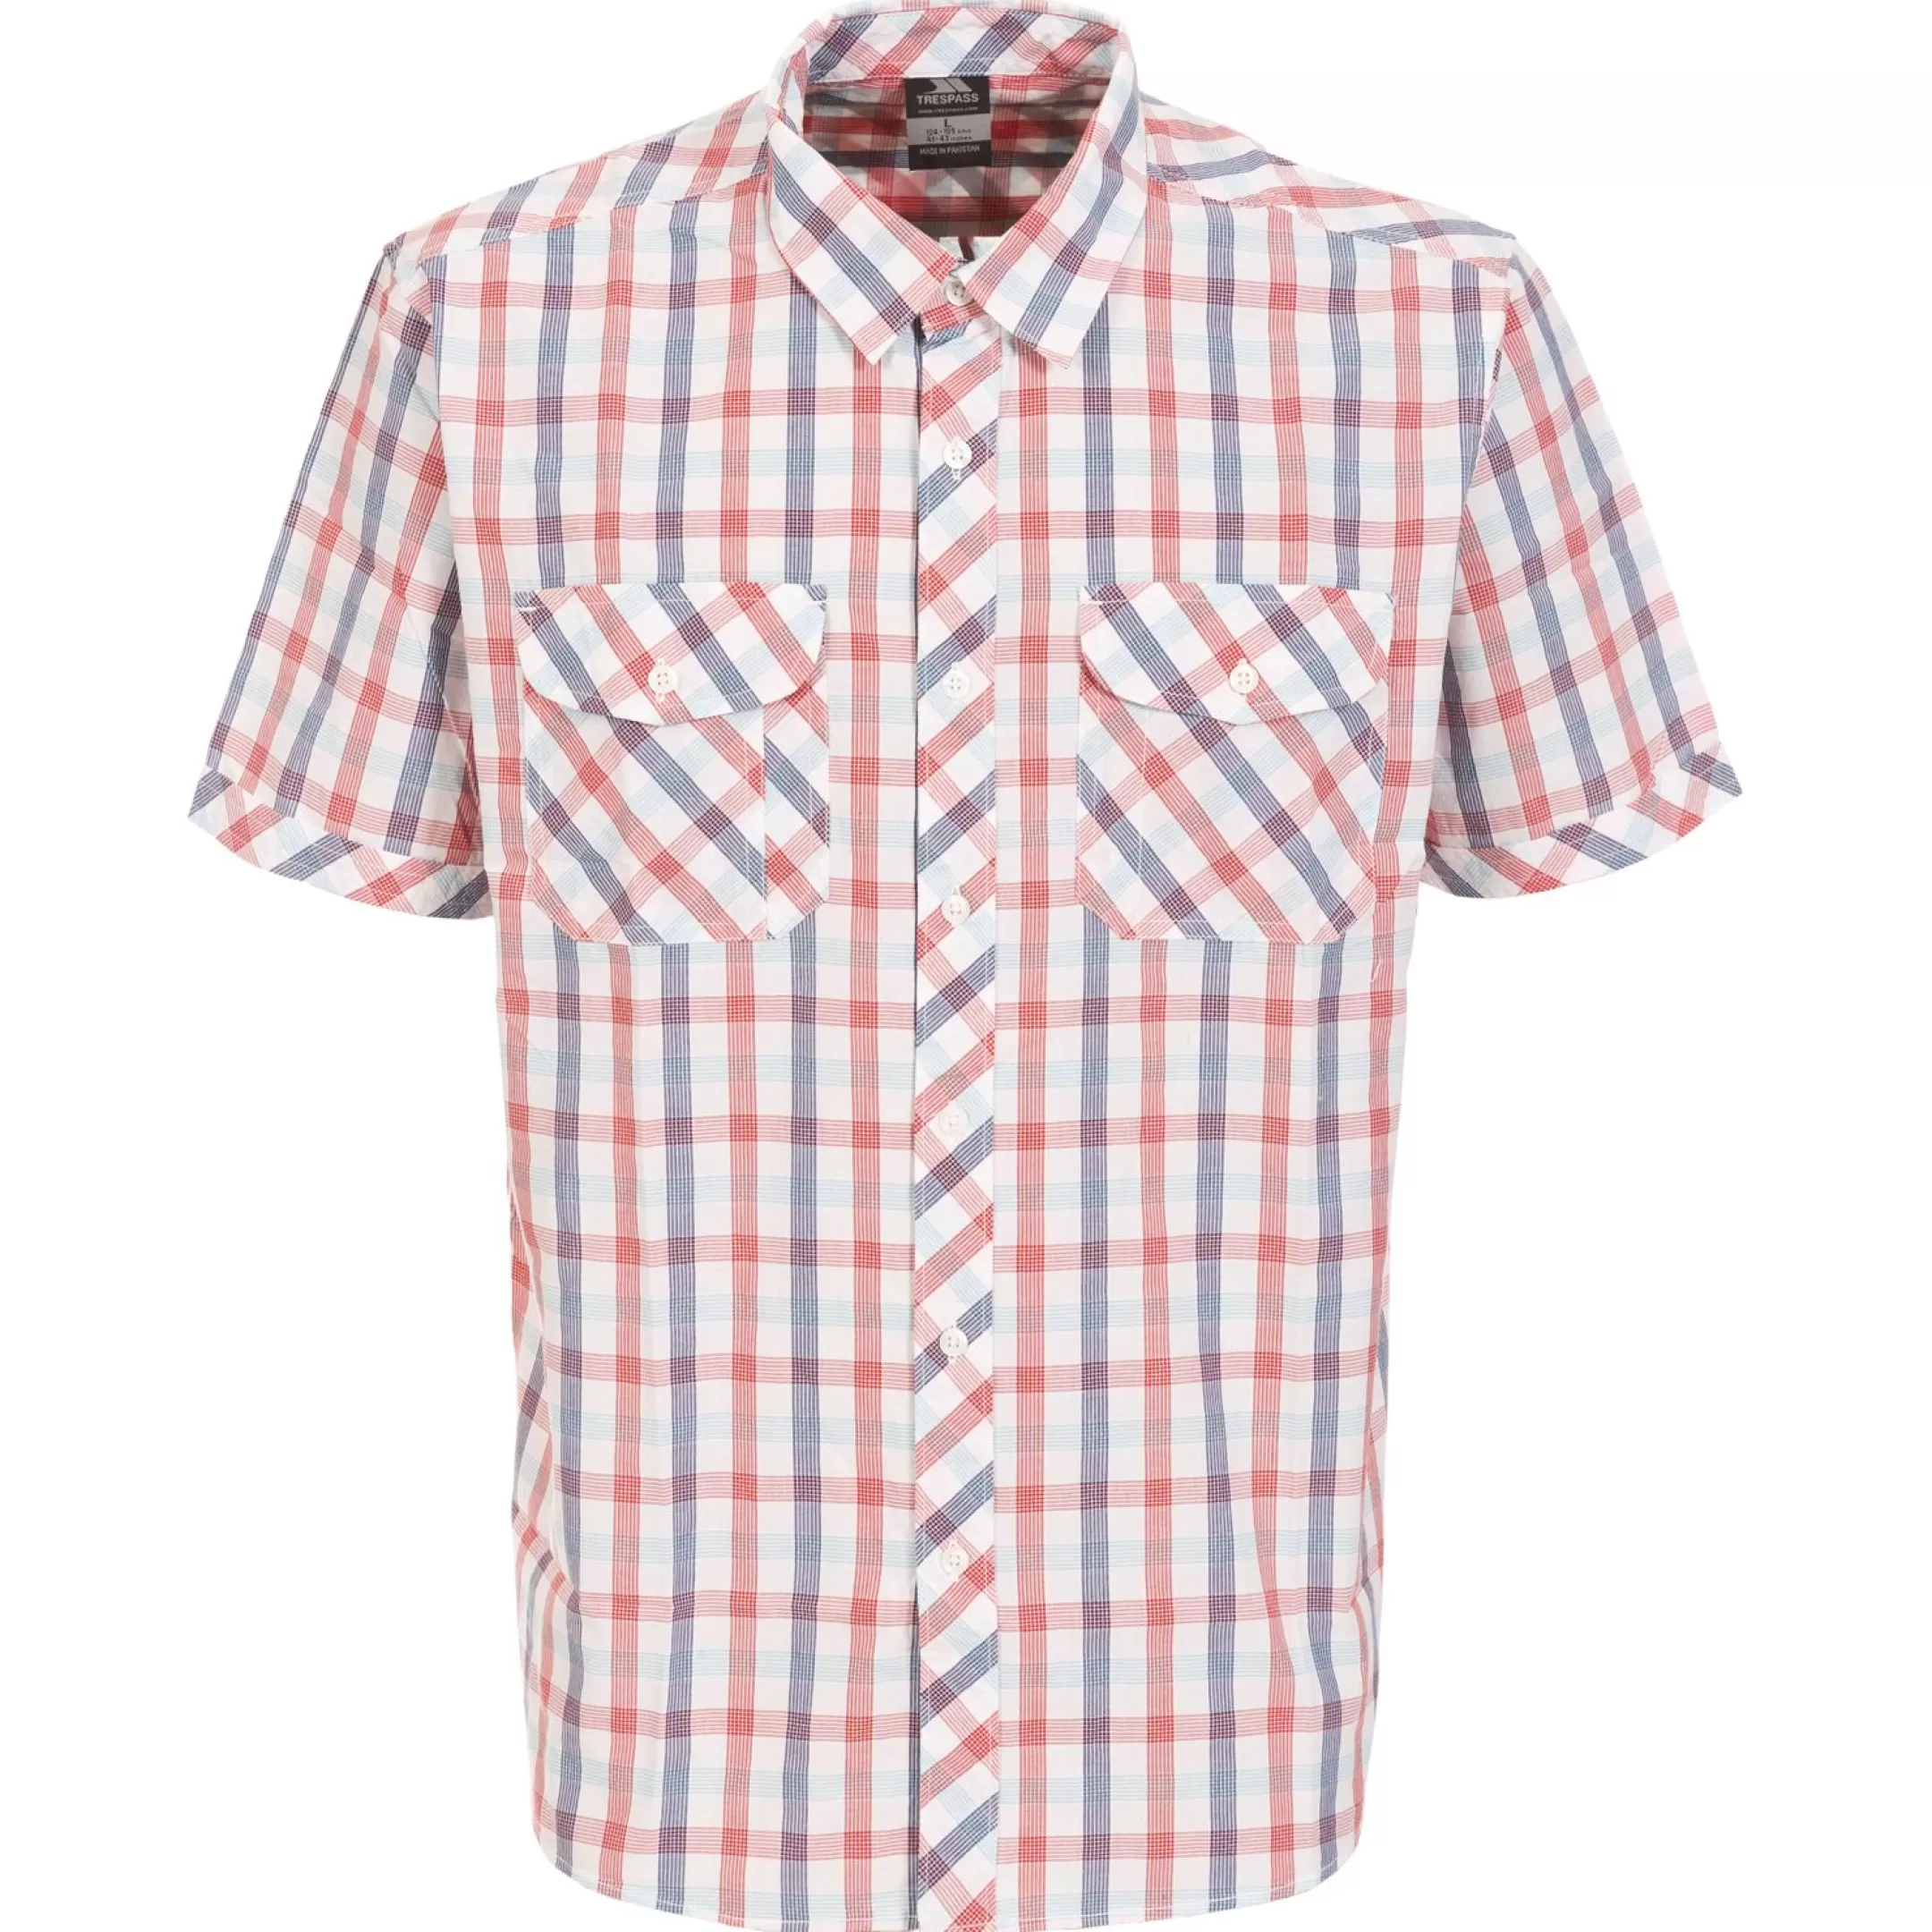 Men's Short Sleeve Checked Shirt Hopedale | Trespass Hot